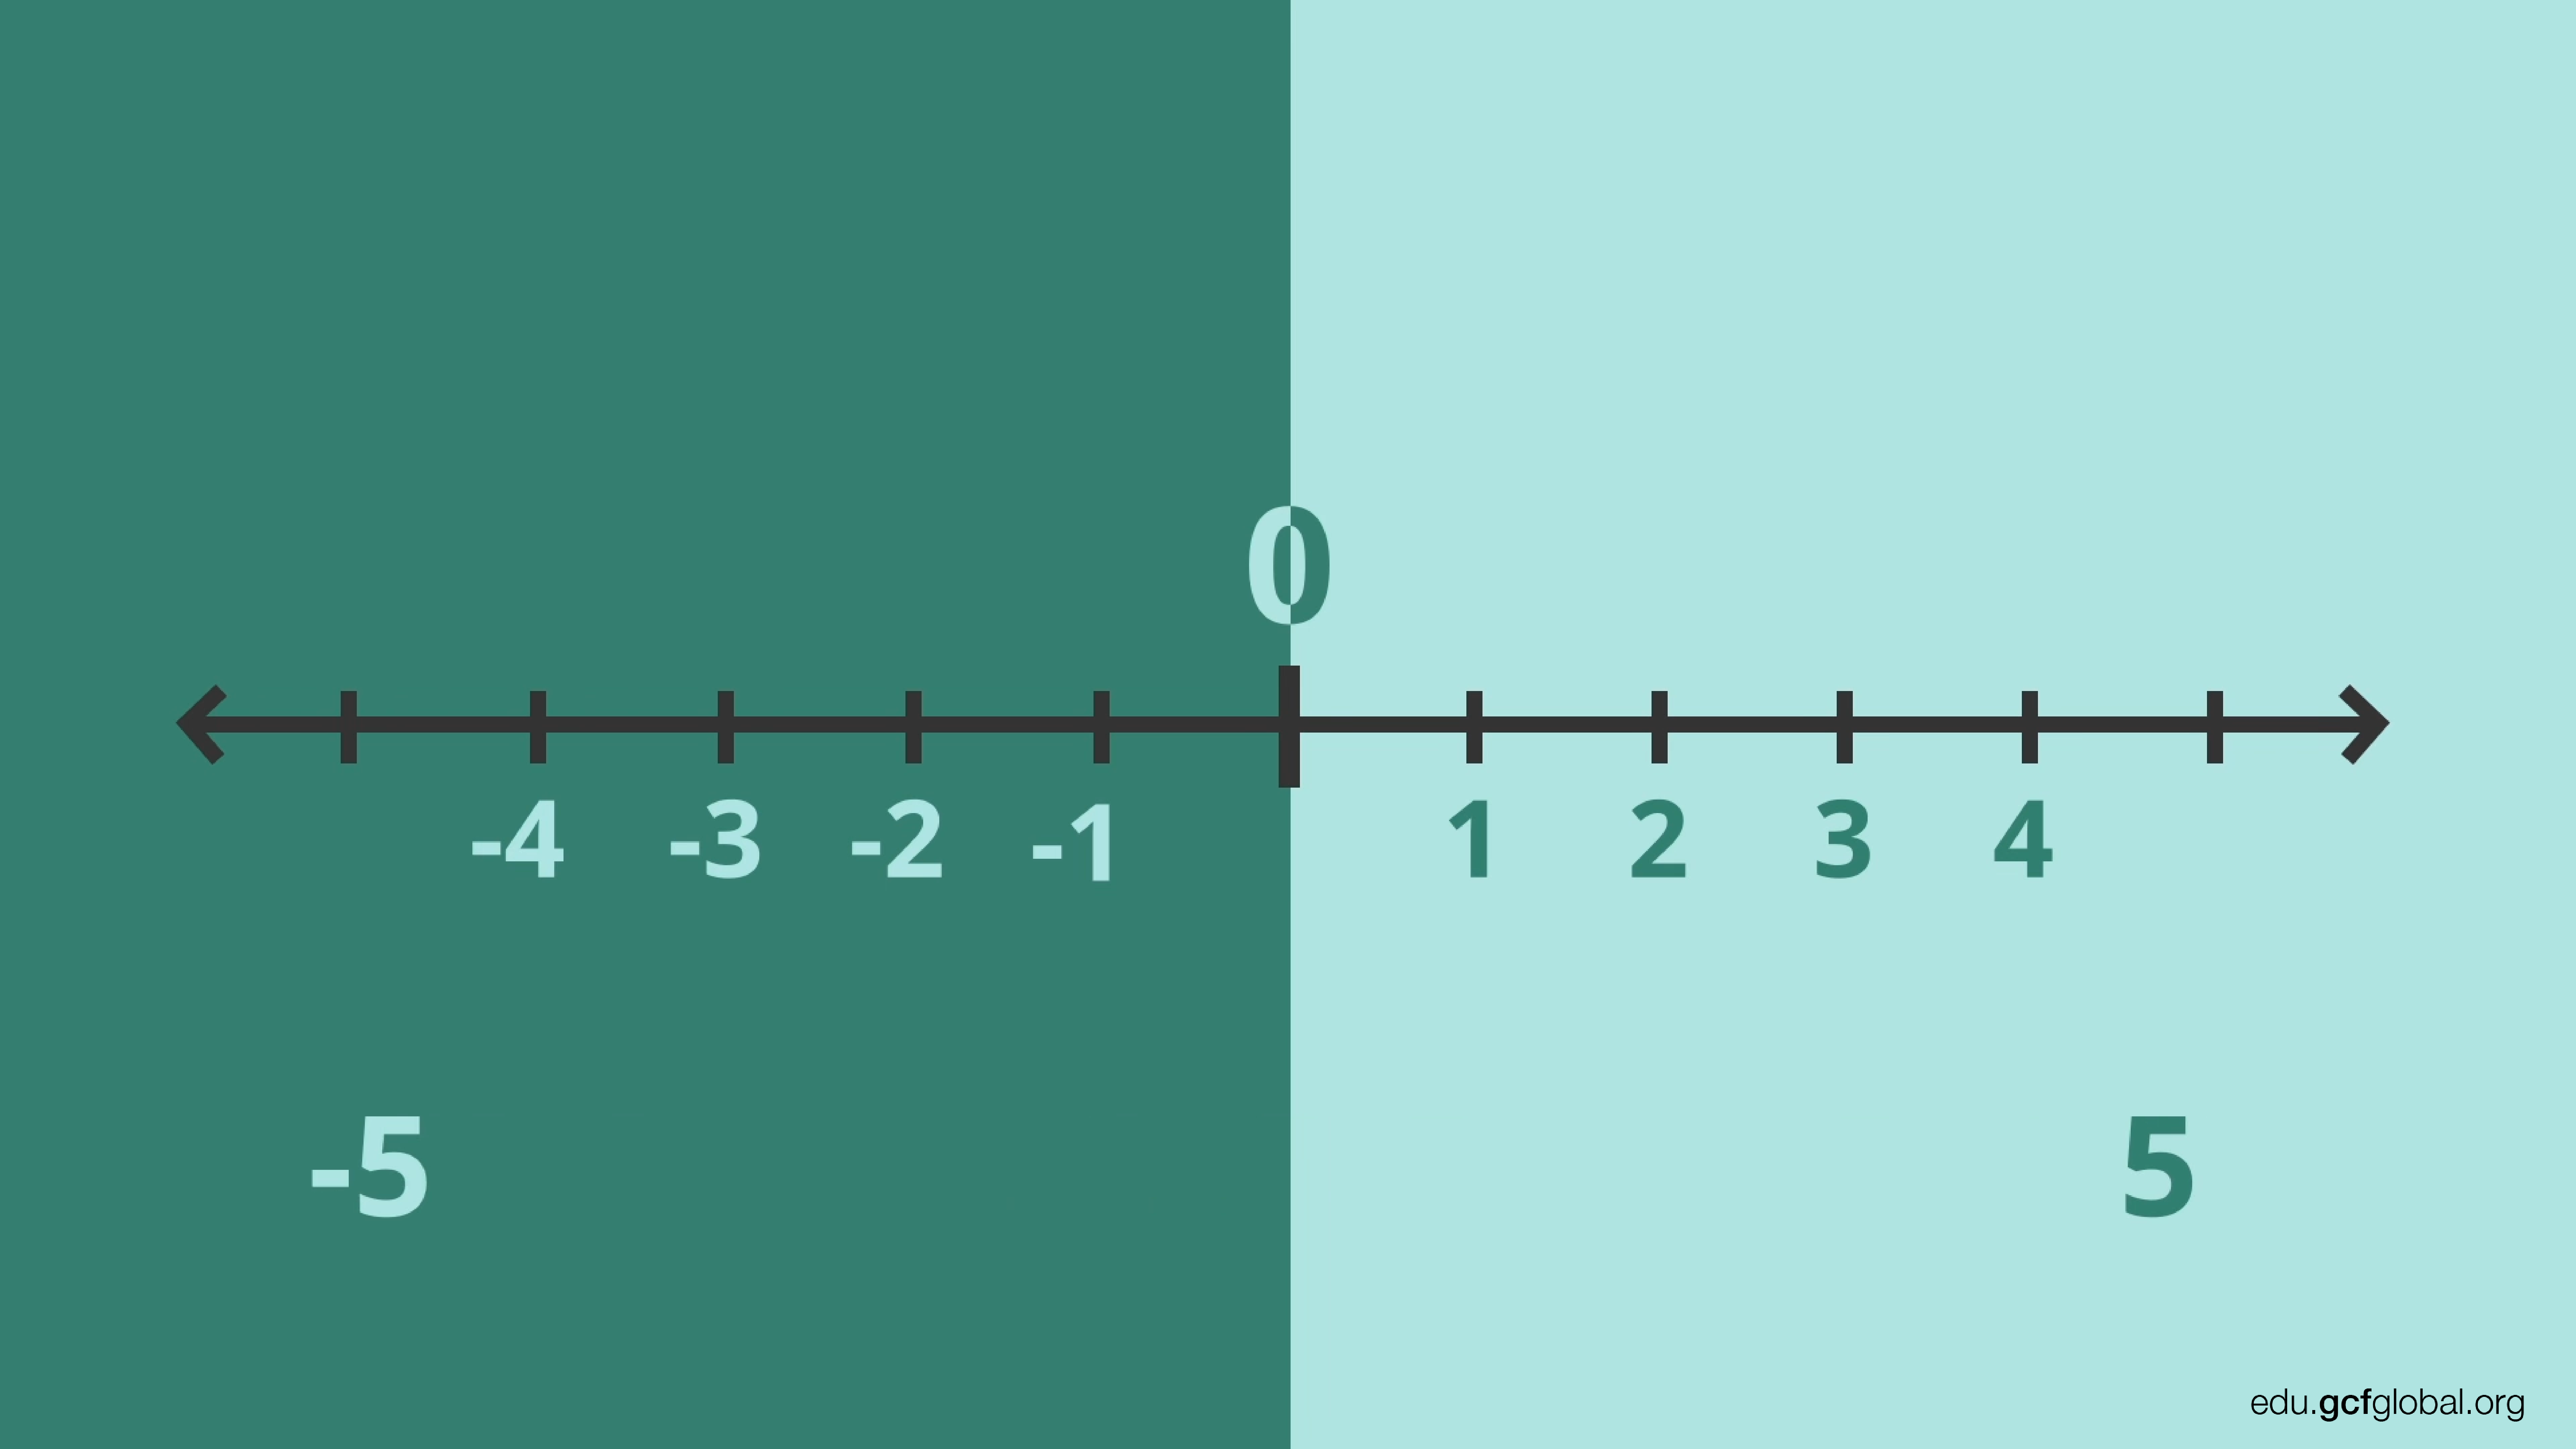 Imagen de recta numérica mostrando números negativos y positivos.